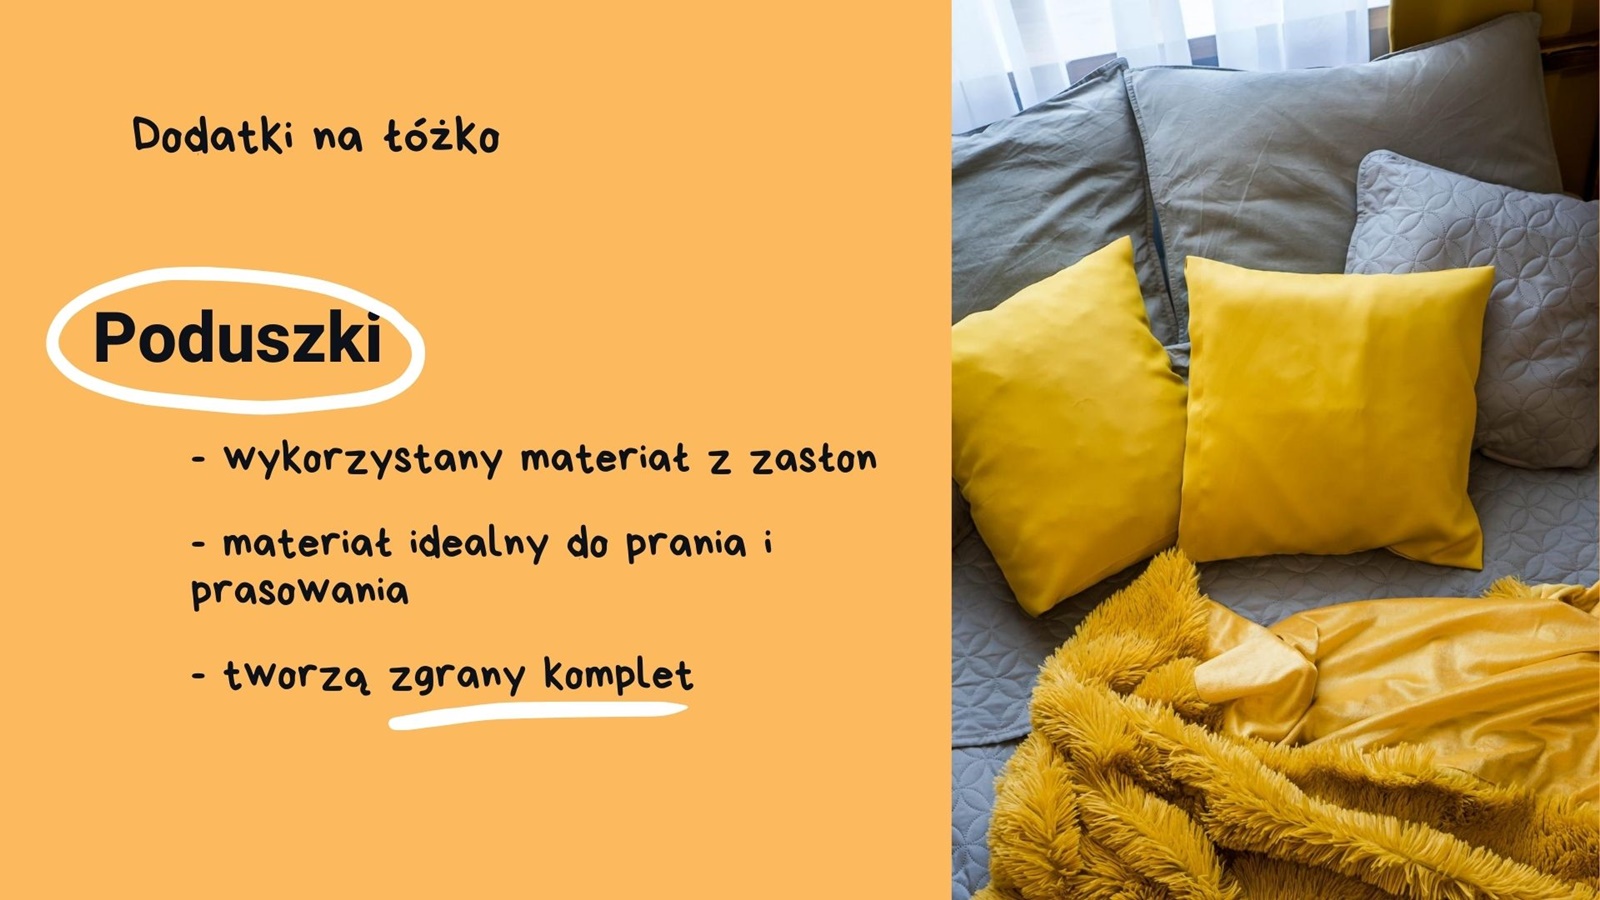 inspiracje pomysły jak urządzić sypialnię żółte zaciemniające grube zasłony żółte dodatki w mieszkaniu szara narzuta pościel na łóżko tanie szafki nocne pufa do sypialni tiulowe zasłony ikea boprix cena